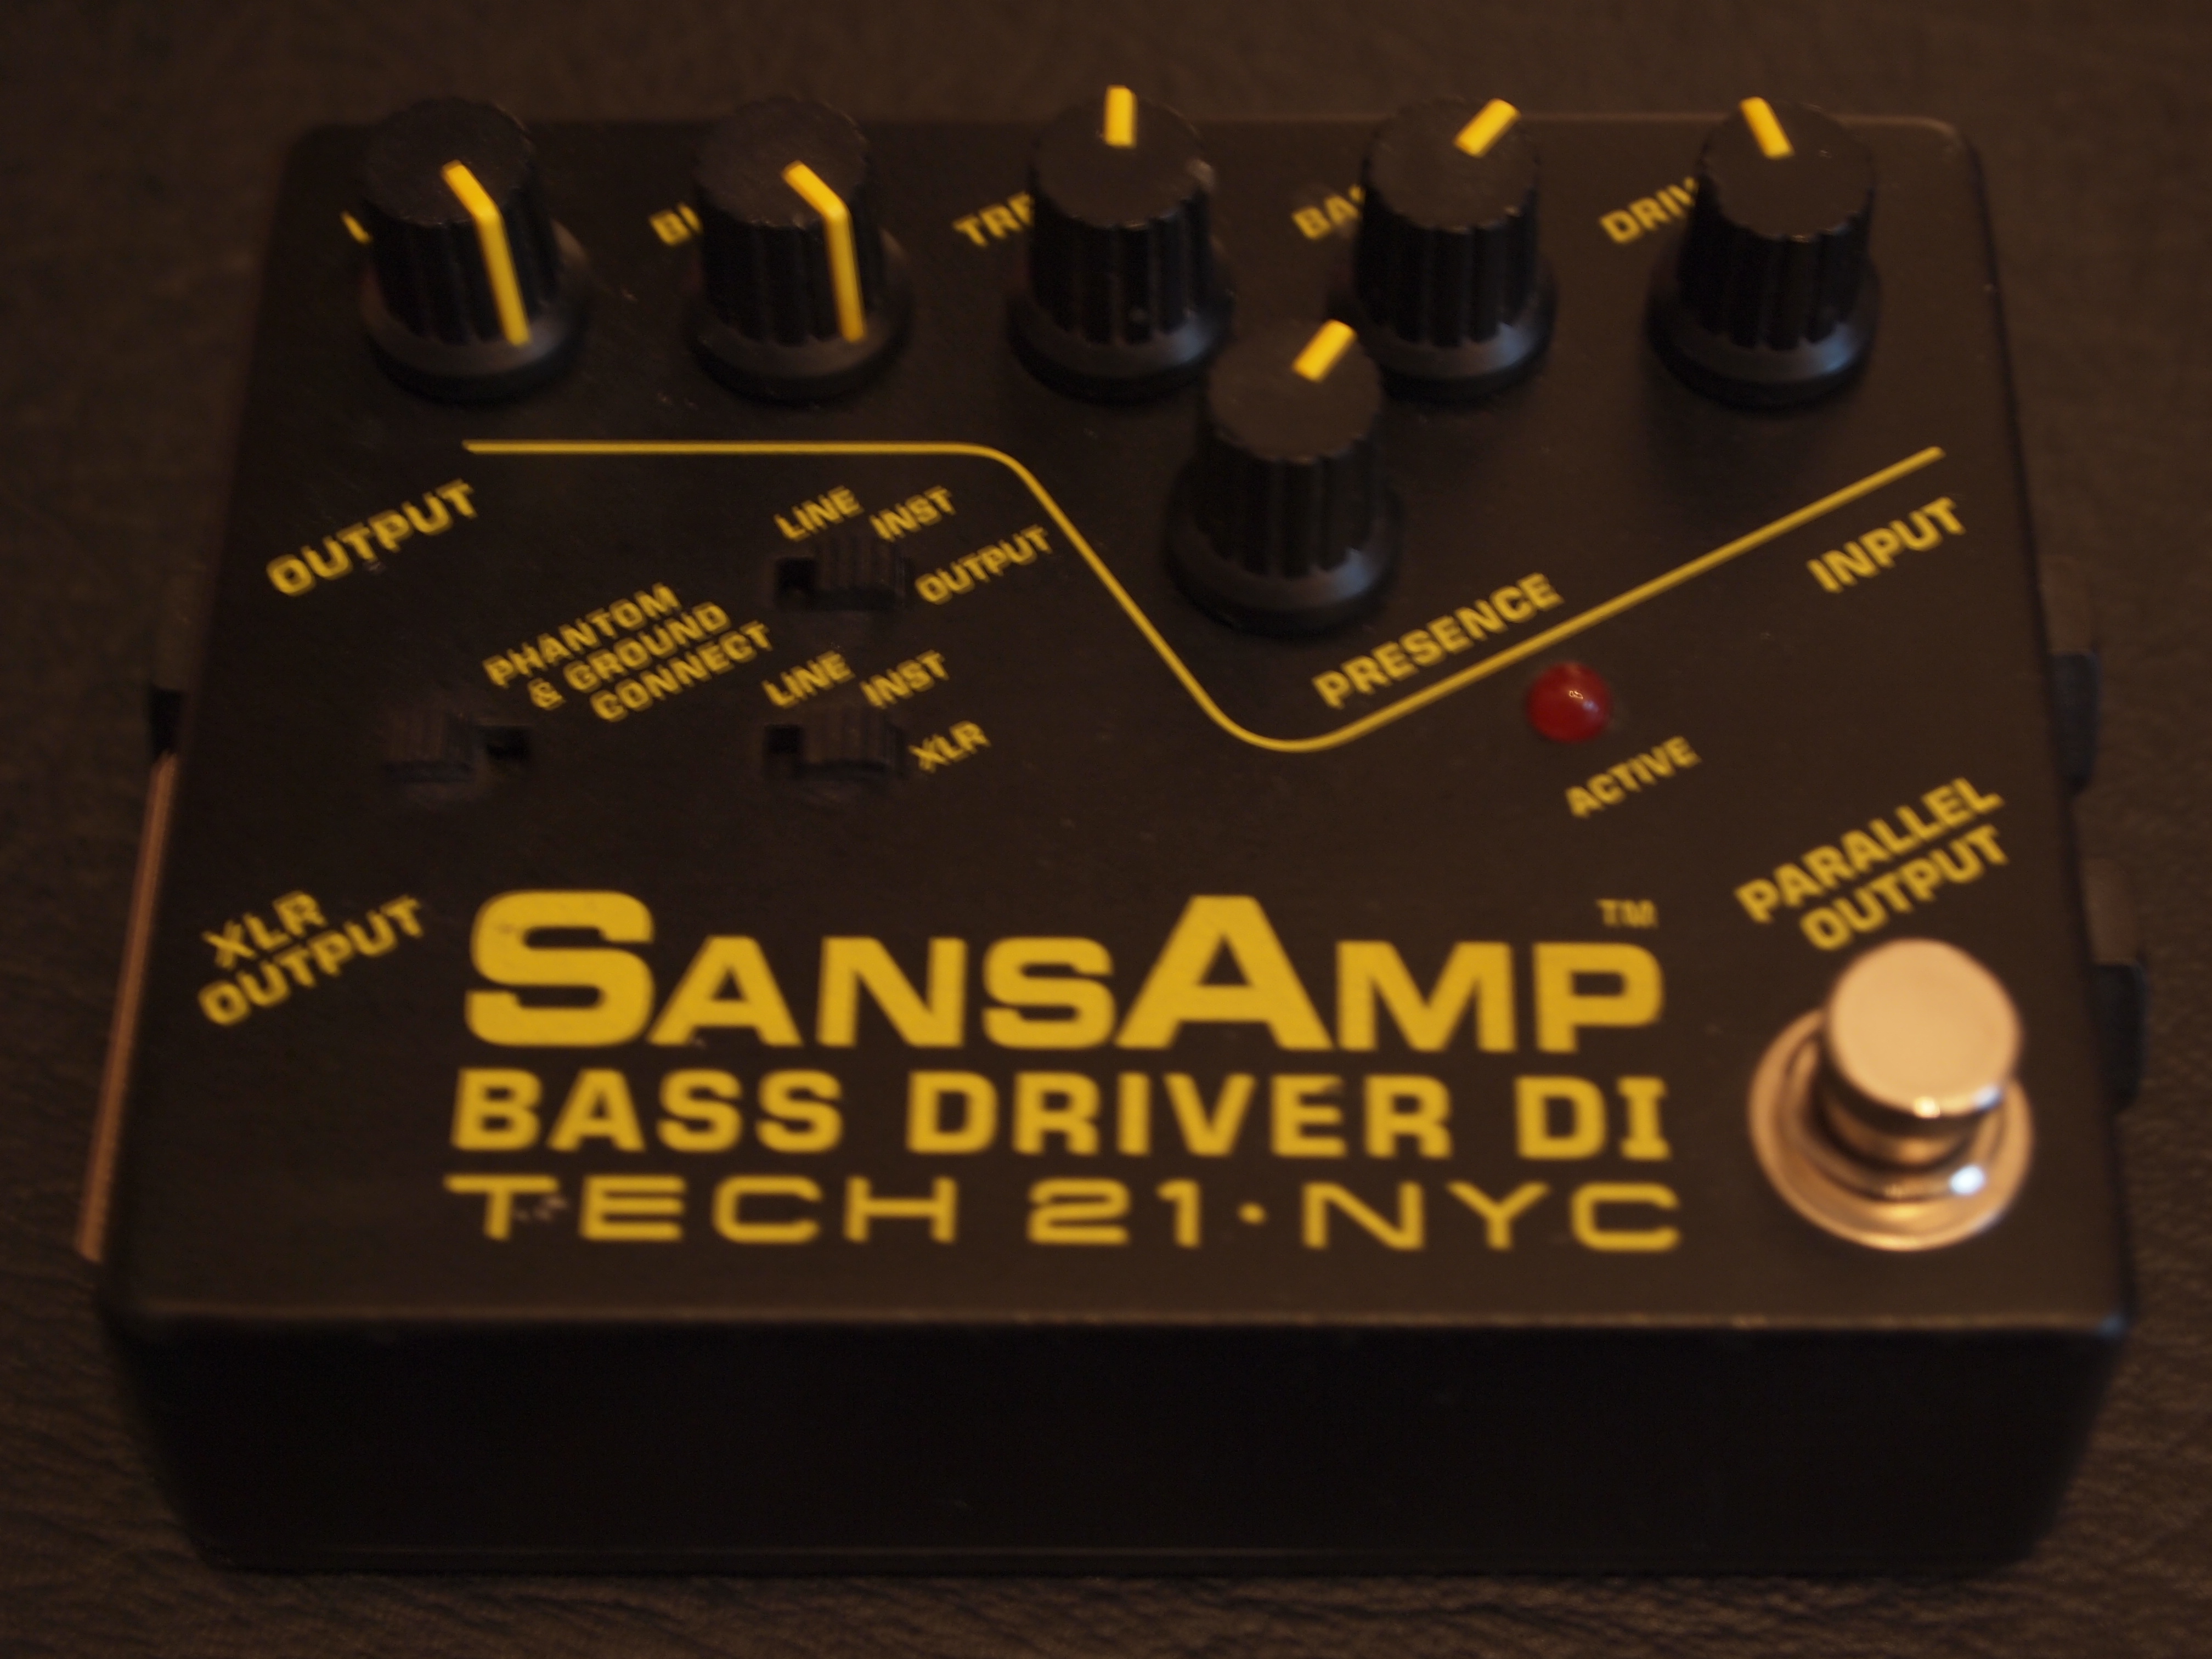 Tech 21 SansAmp Bass Driver DI image (#376198) - Audiofanzine